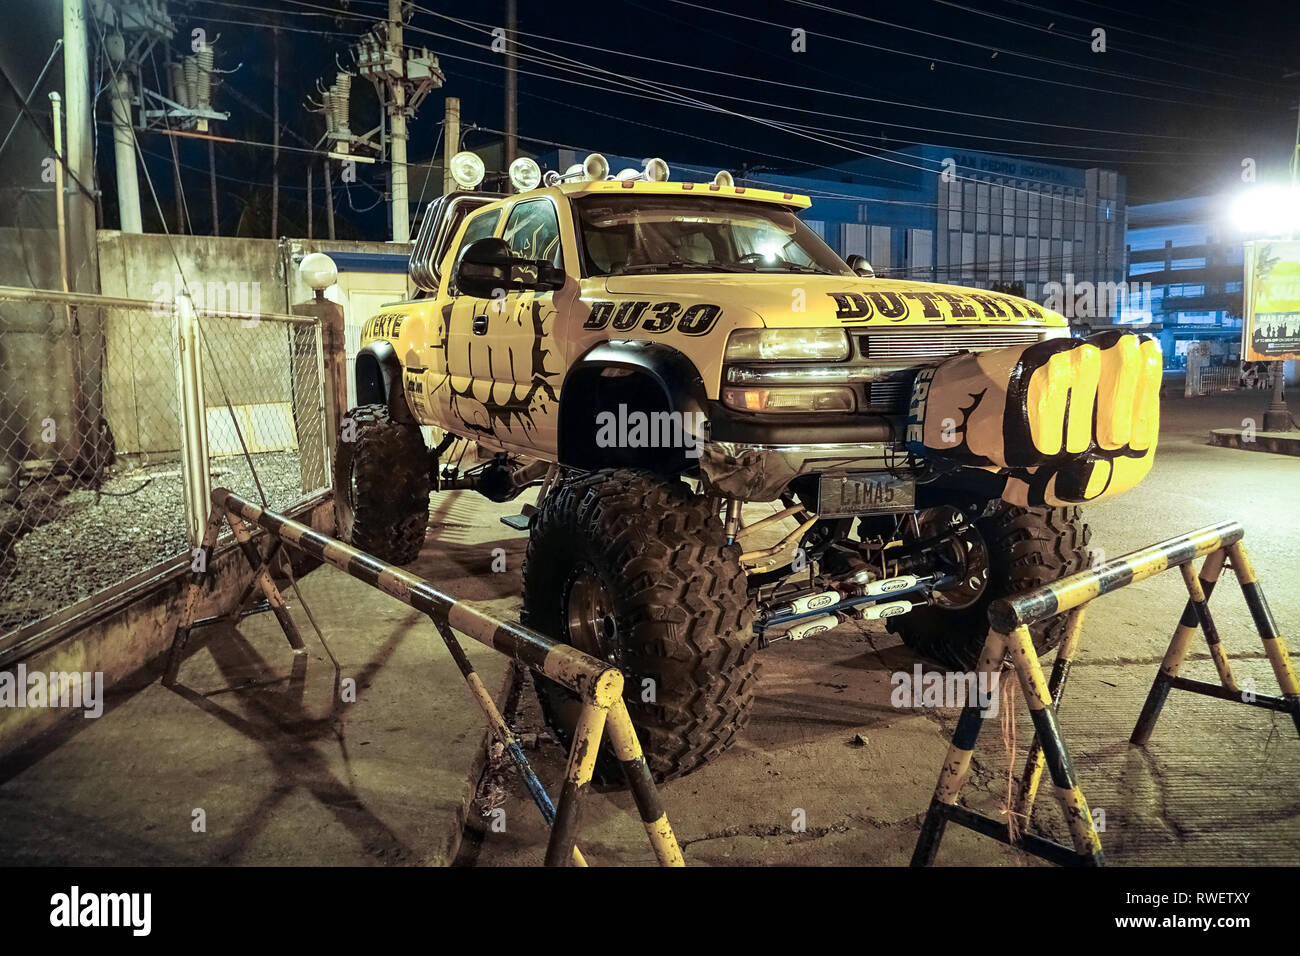 Duterte monster truck jaune à thème avec Fist - Davao City, Philippines Banque D'Images